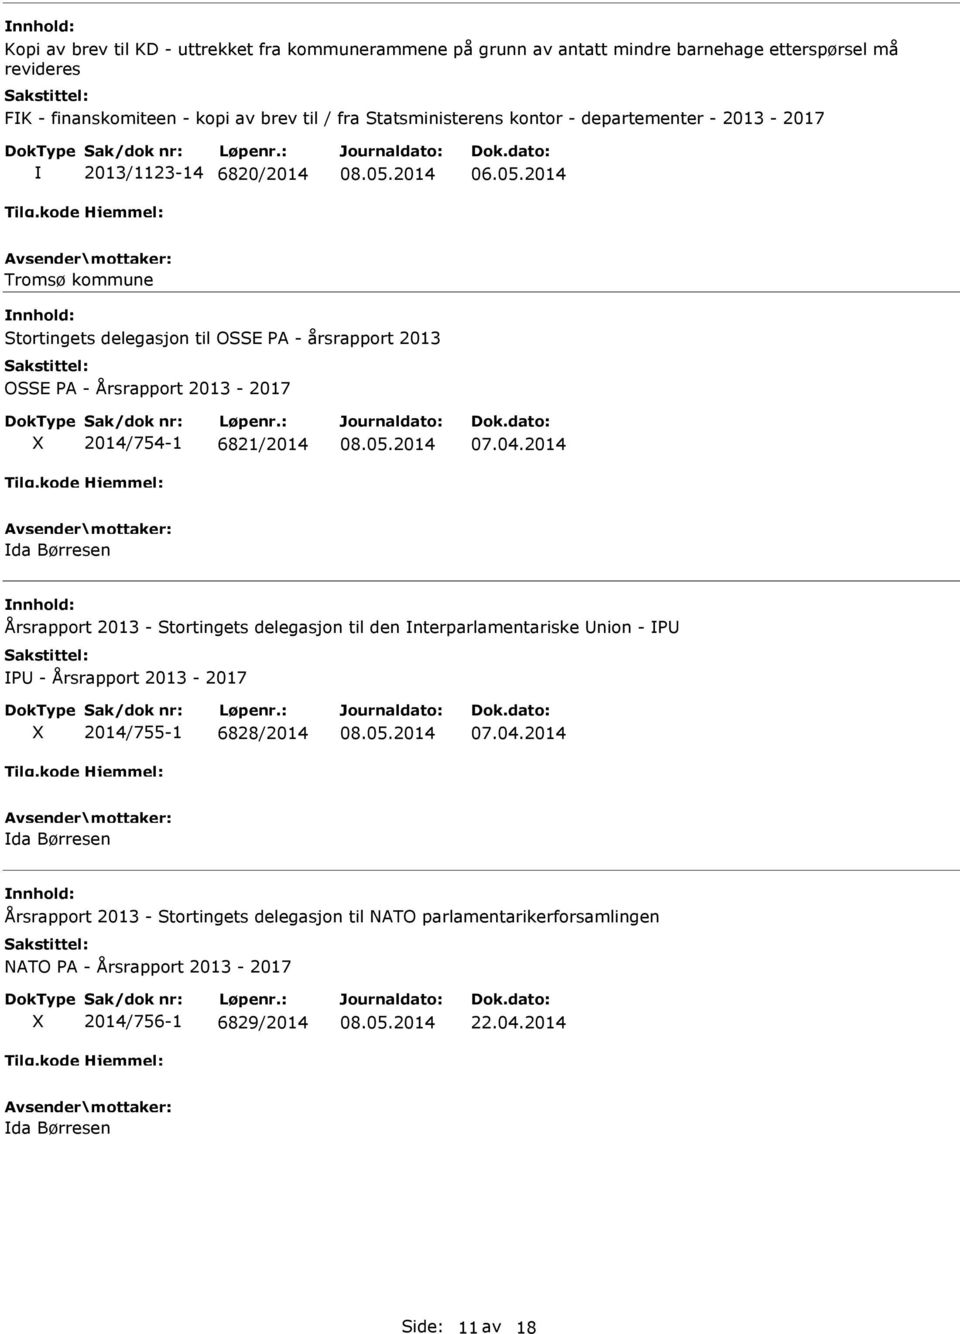 2014 Tromsø kommune Stortingets delegasjon til OSSE PA - årsrapport 2013 OSSE PA - Årsrapport 2013-2017 X 2014/754-1 6821/2014 07.04.